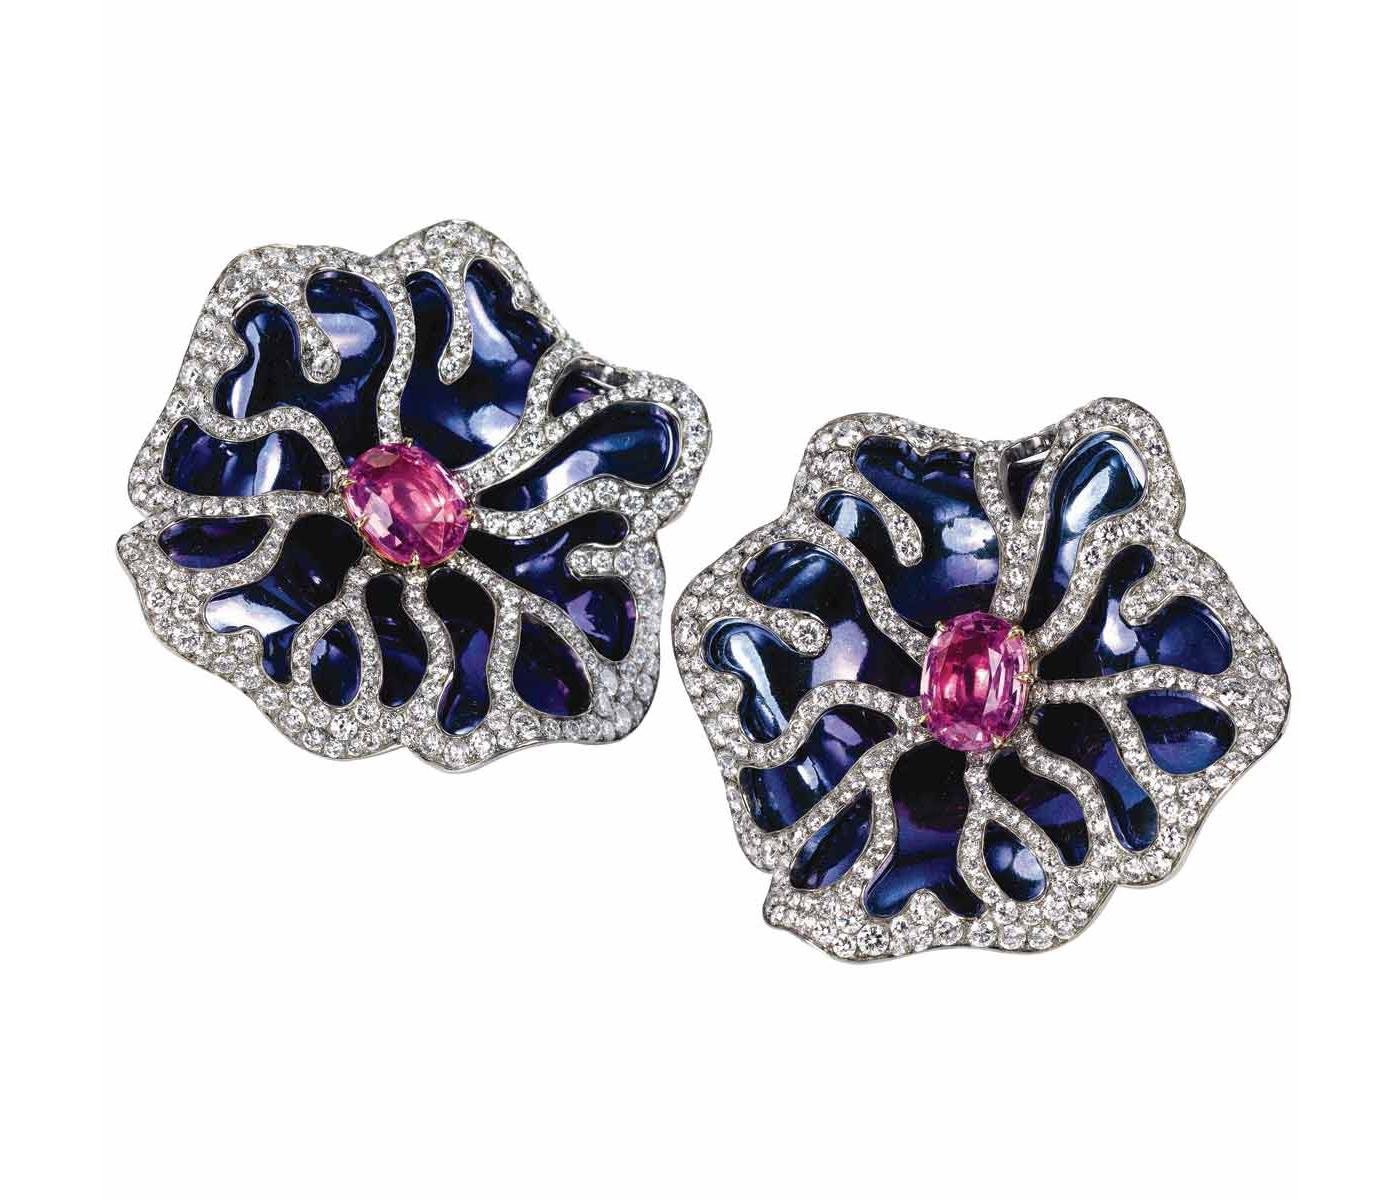 Earrings by Eclat Jewels